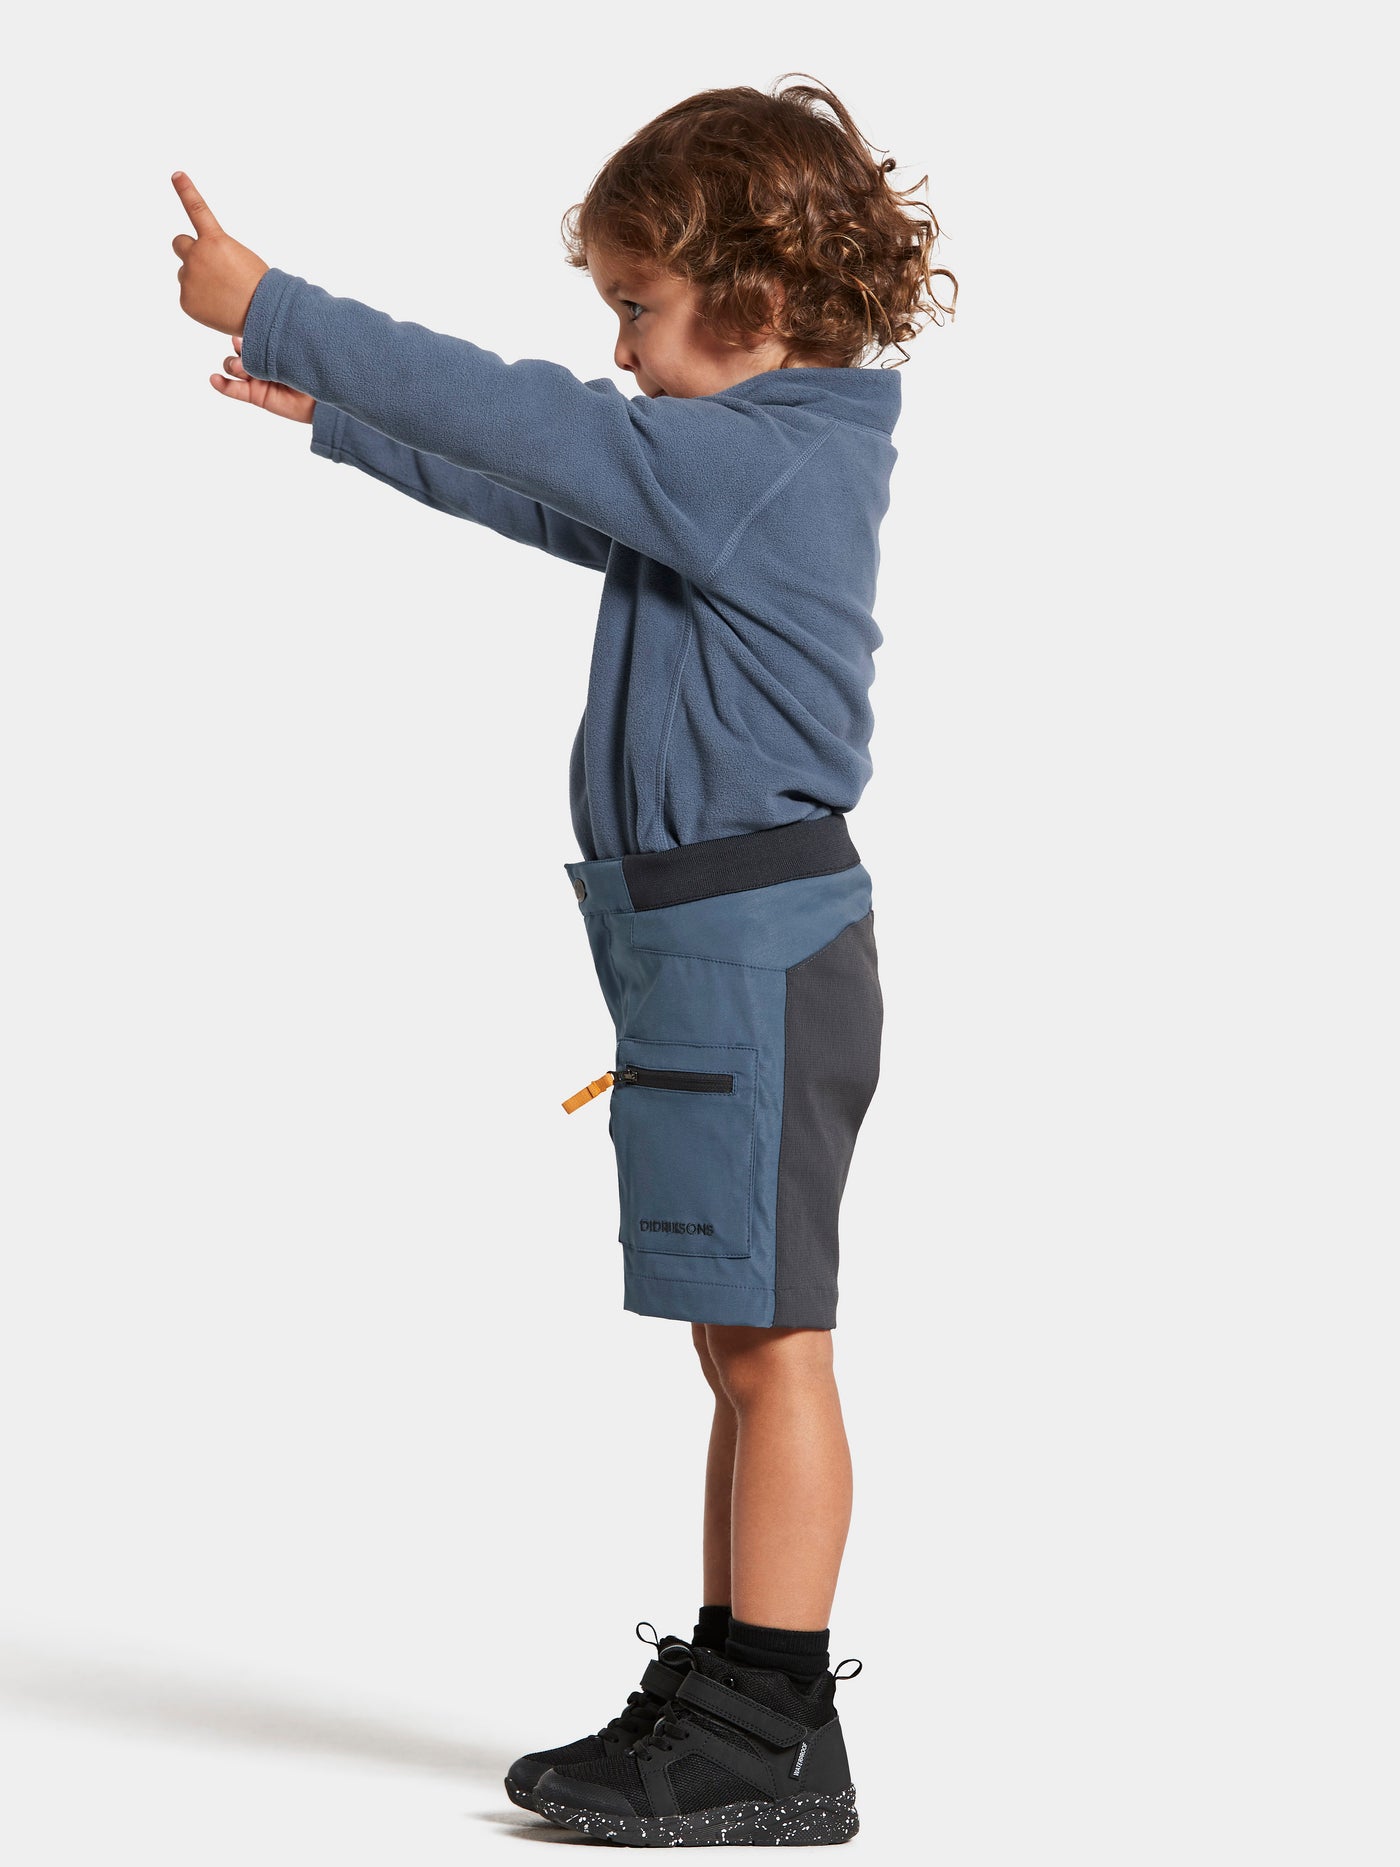 Lapsen päällä Didriksonsin siniset Ekoxen shortsit kuvattuna sivusta